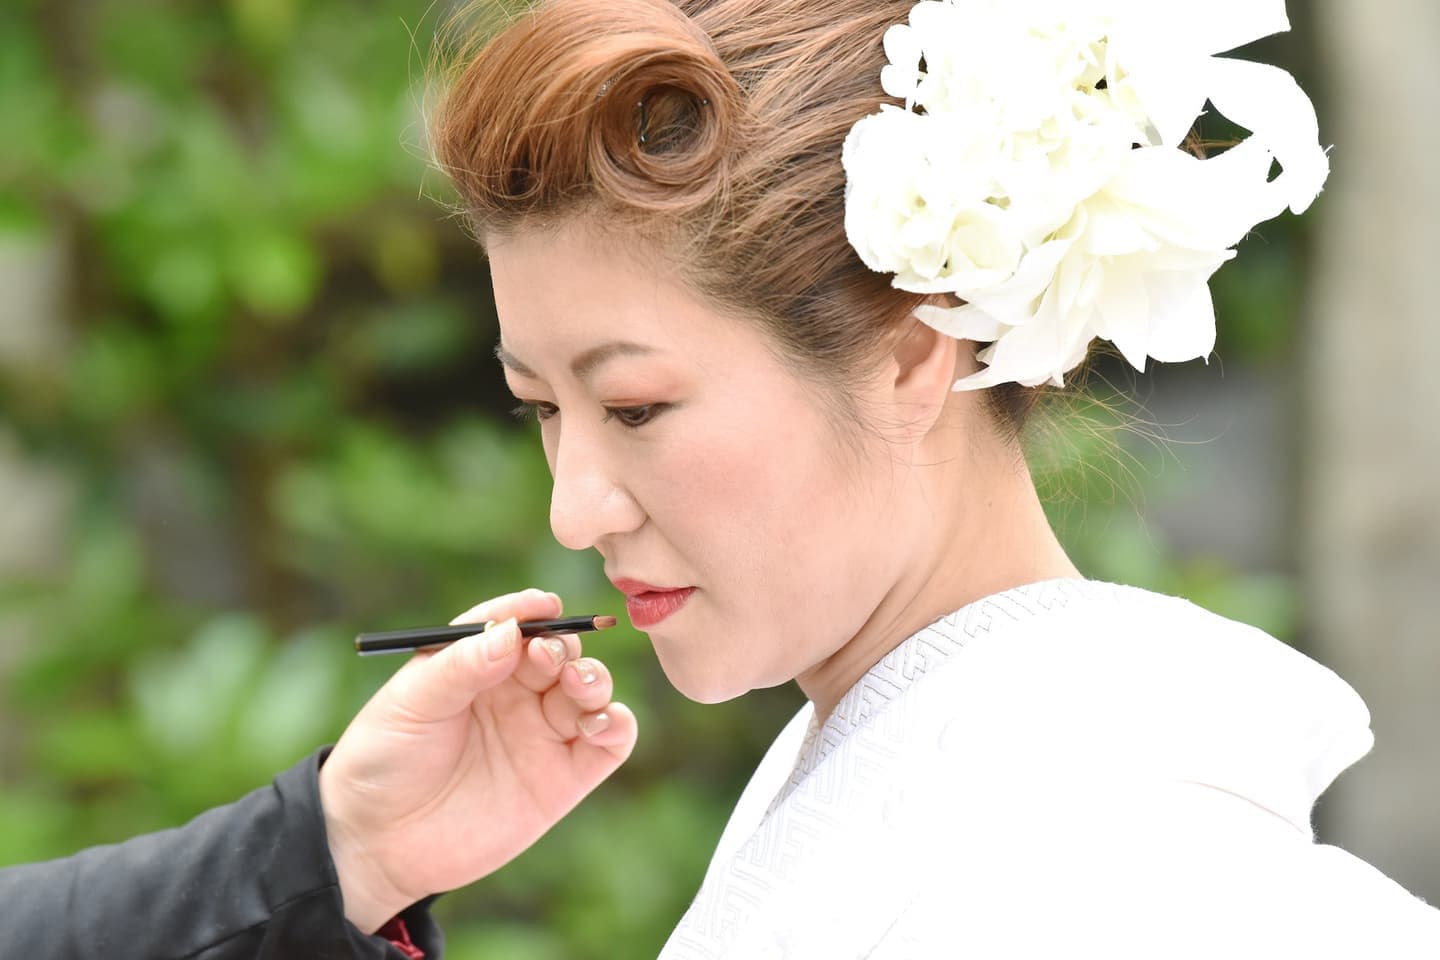 難波八坂神社の結婚式の洋髪白無垢